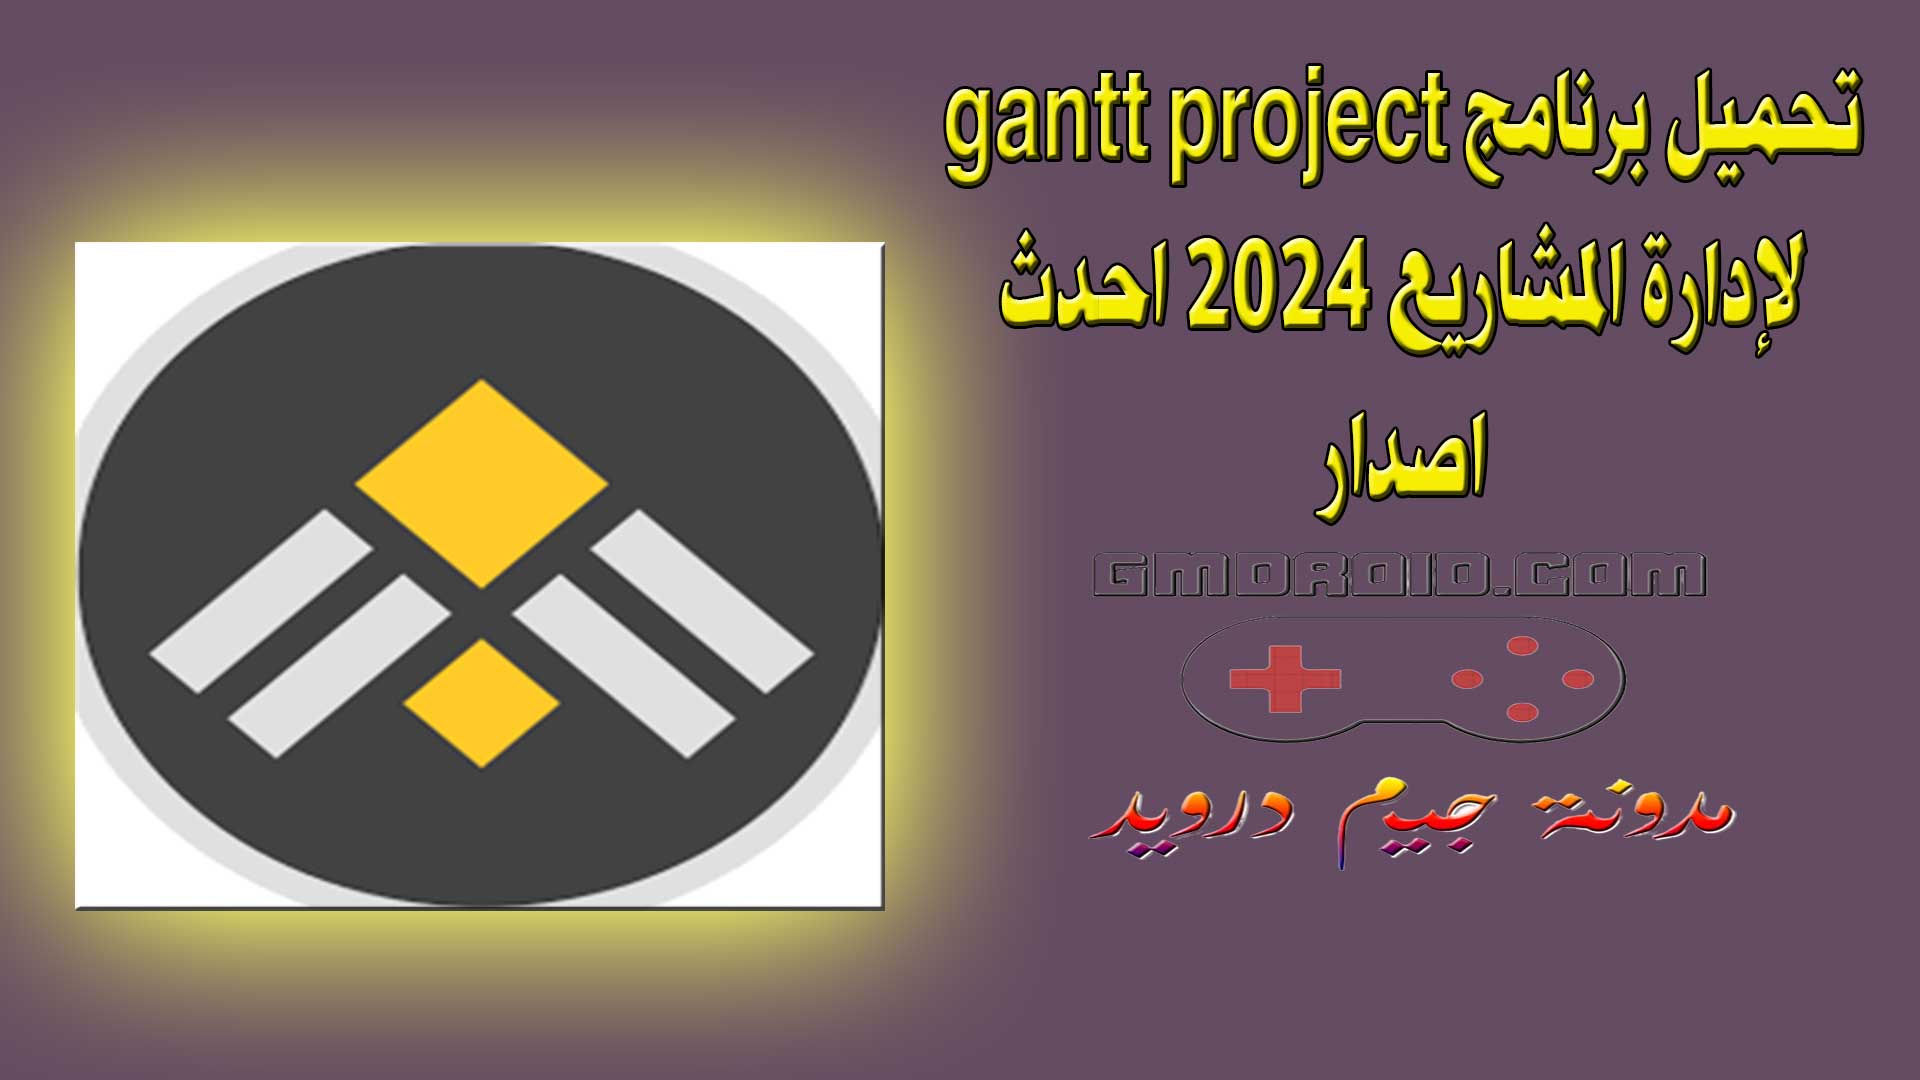 تحميل برنامج gantt project لإدارة المشاريع 2024 احدث اصدار